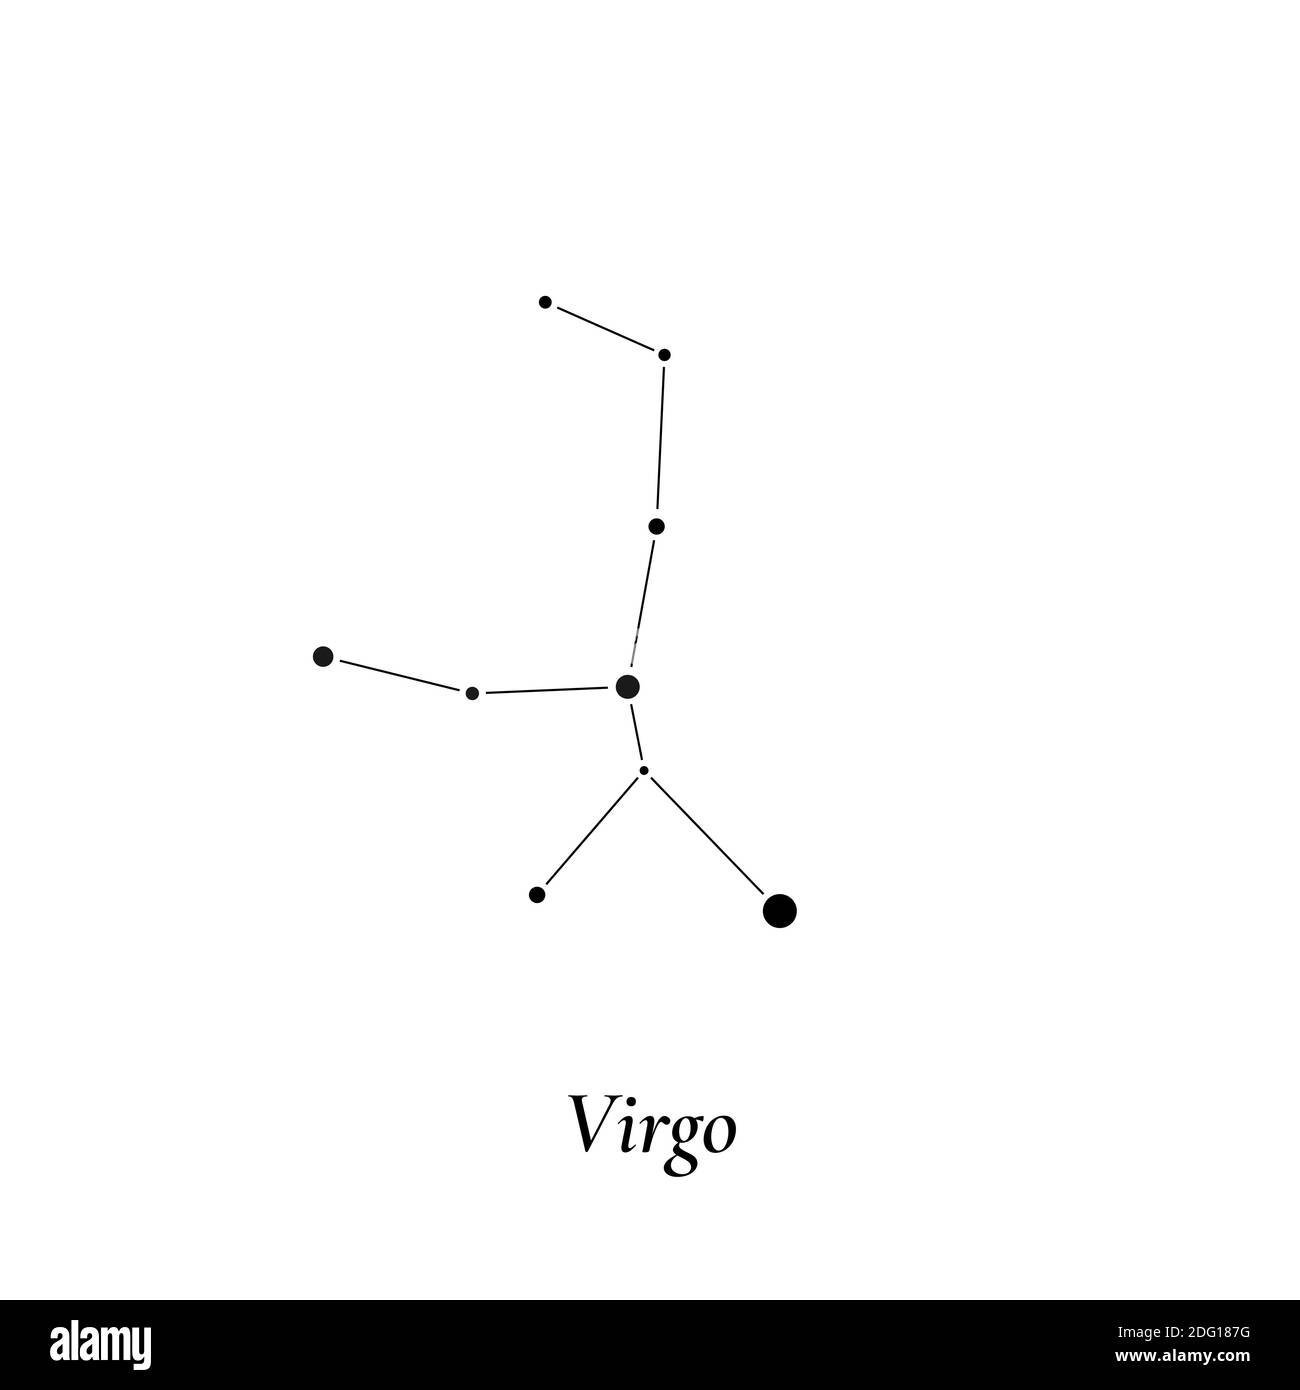 Virgo sign. Stars map of zodiac constellation. Vector illustration Stock Vector